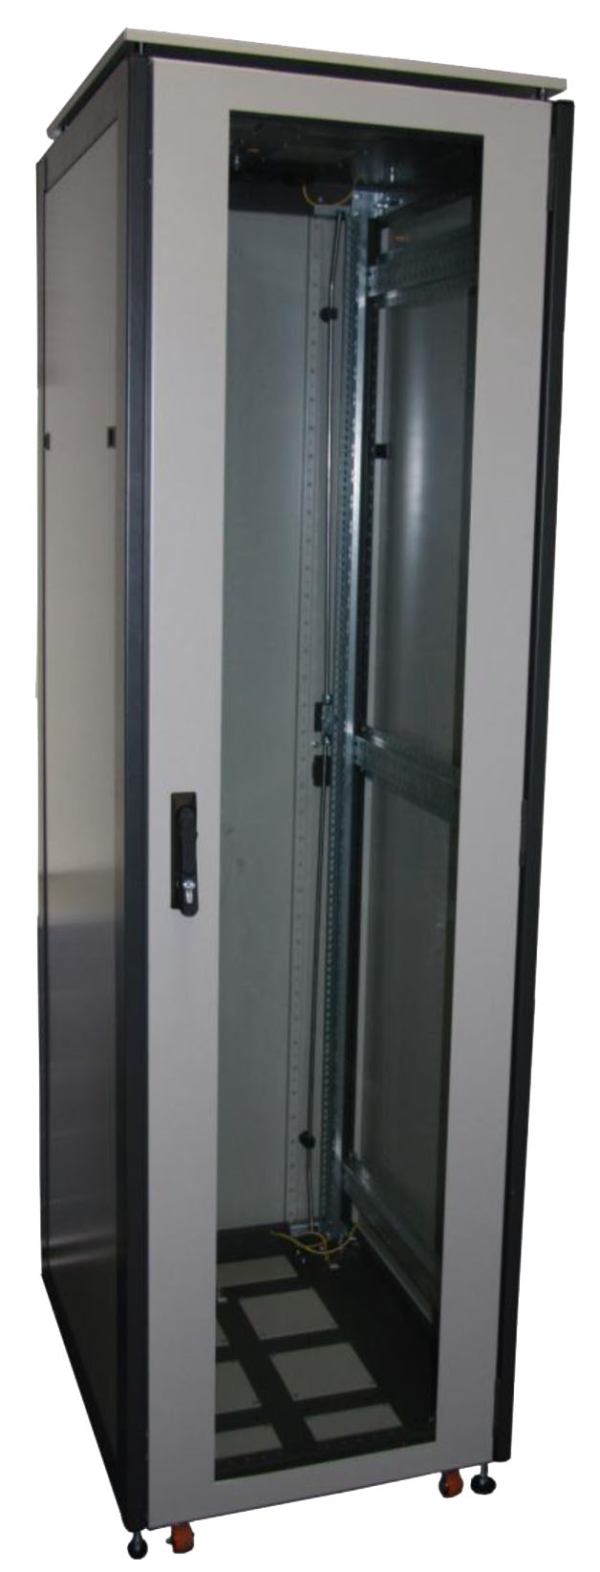 ССКТБ ТОМАСС ШТК-6816Э-01 - шкаф телекоммуникационный 19", 33U, 600х800х1600 мм, с металлической задней панелью и стеклянной дверью